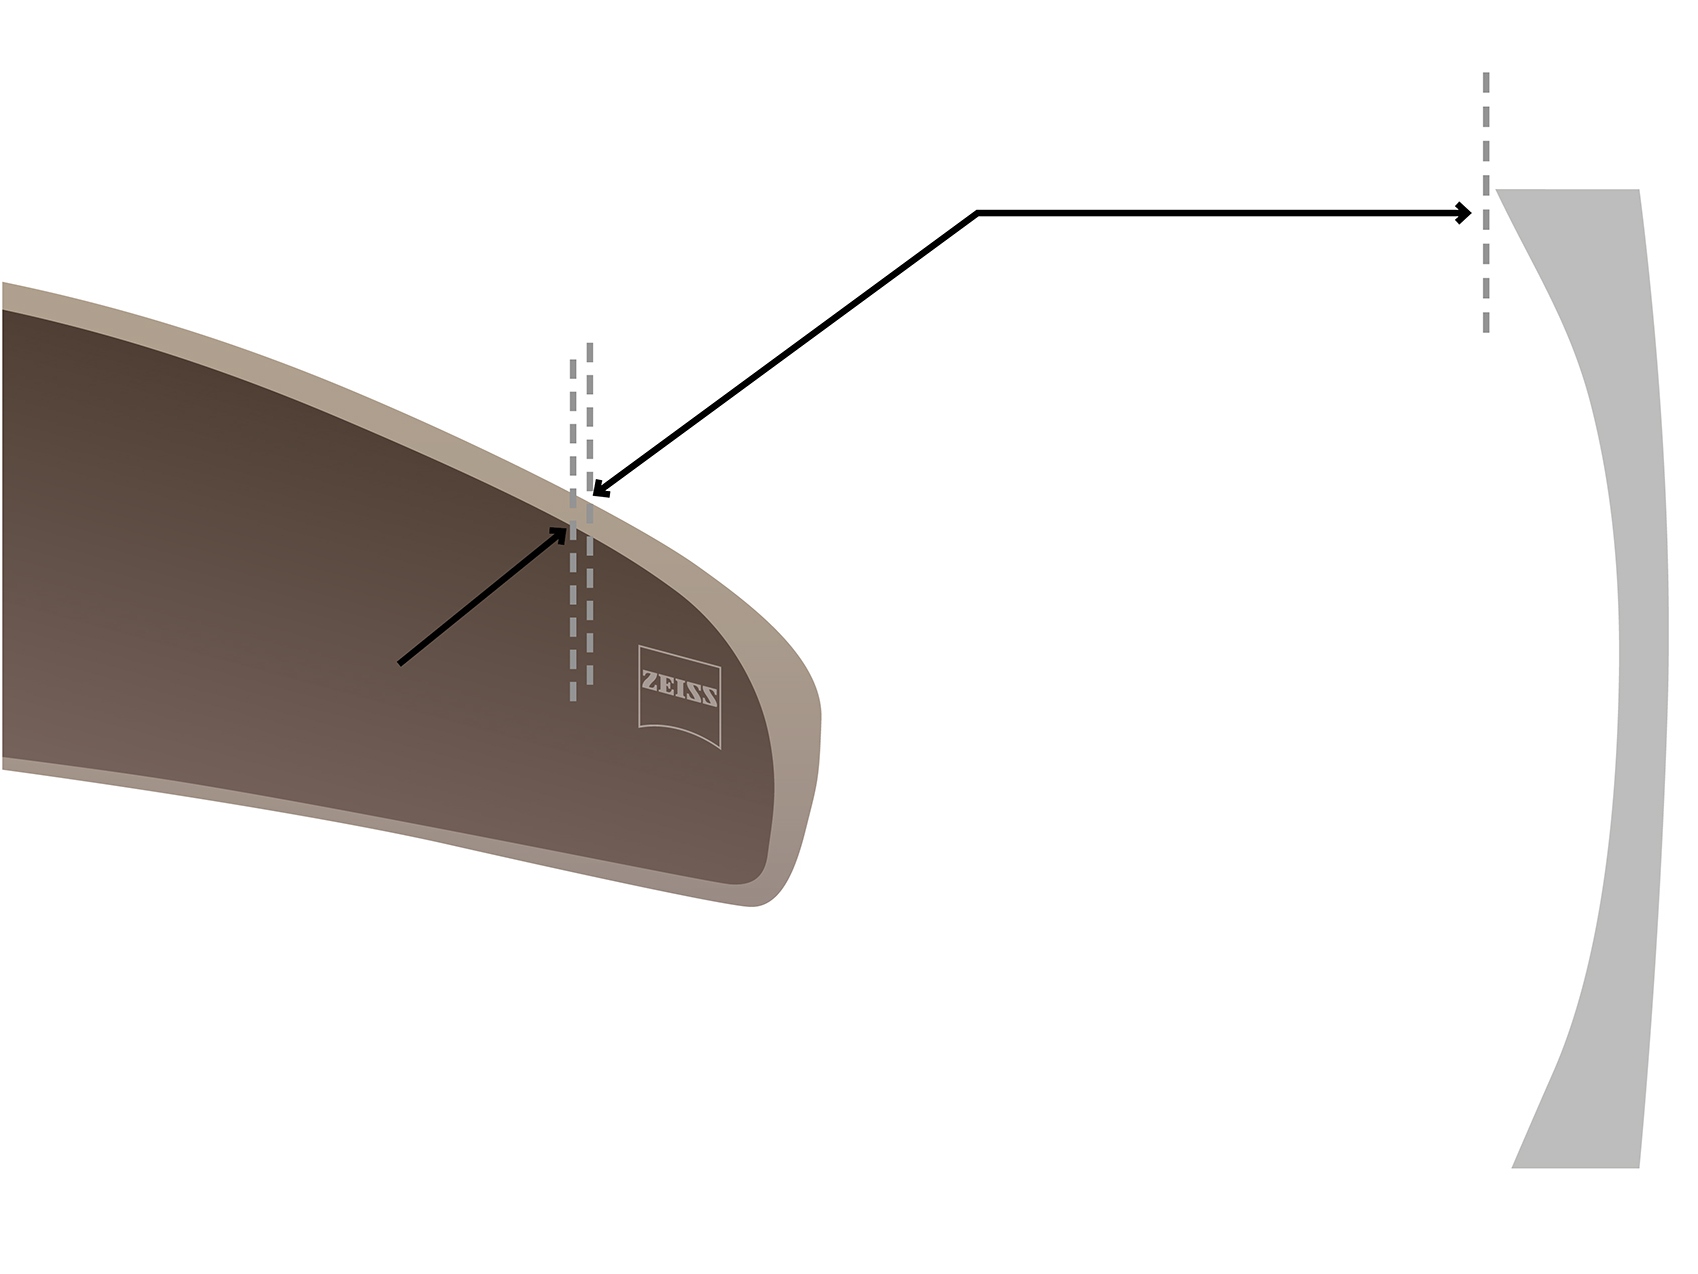 코스메틱 엣지® 기술이 클로즈업된 자이스 고커브 렌즈의 이미지. 